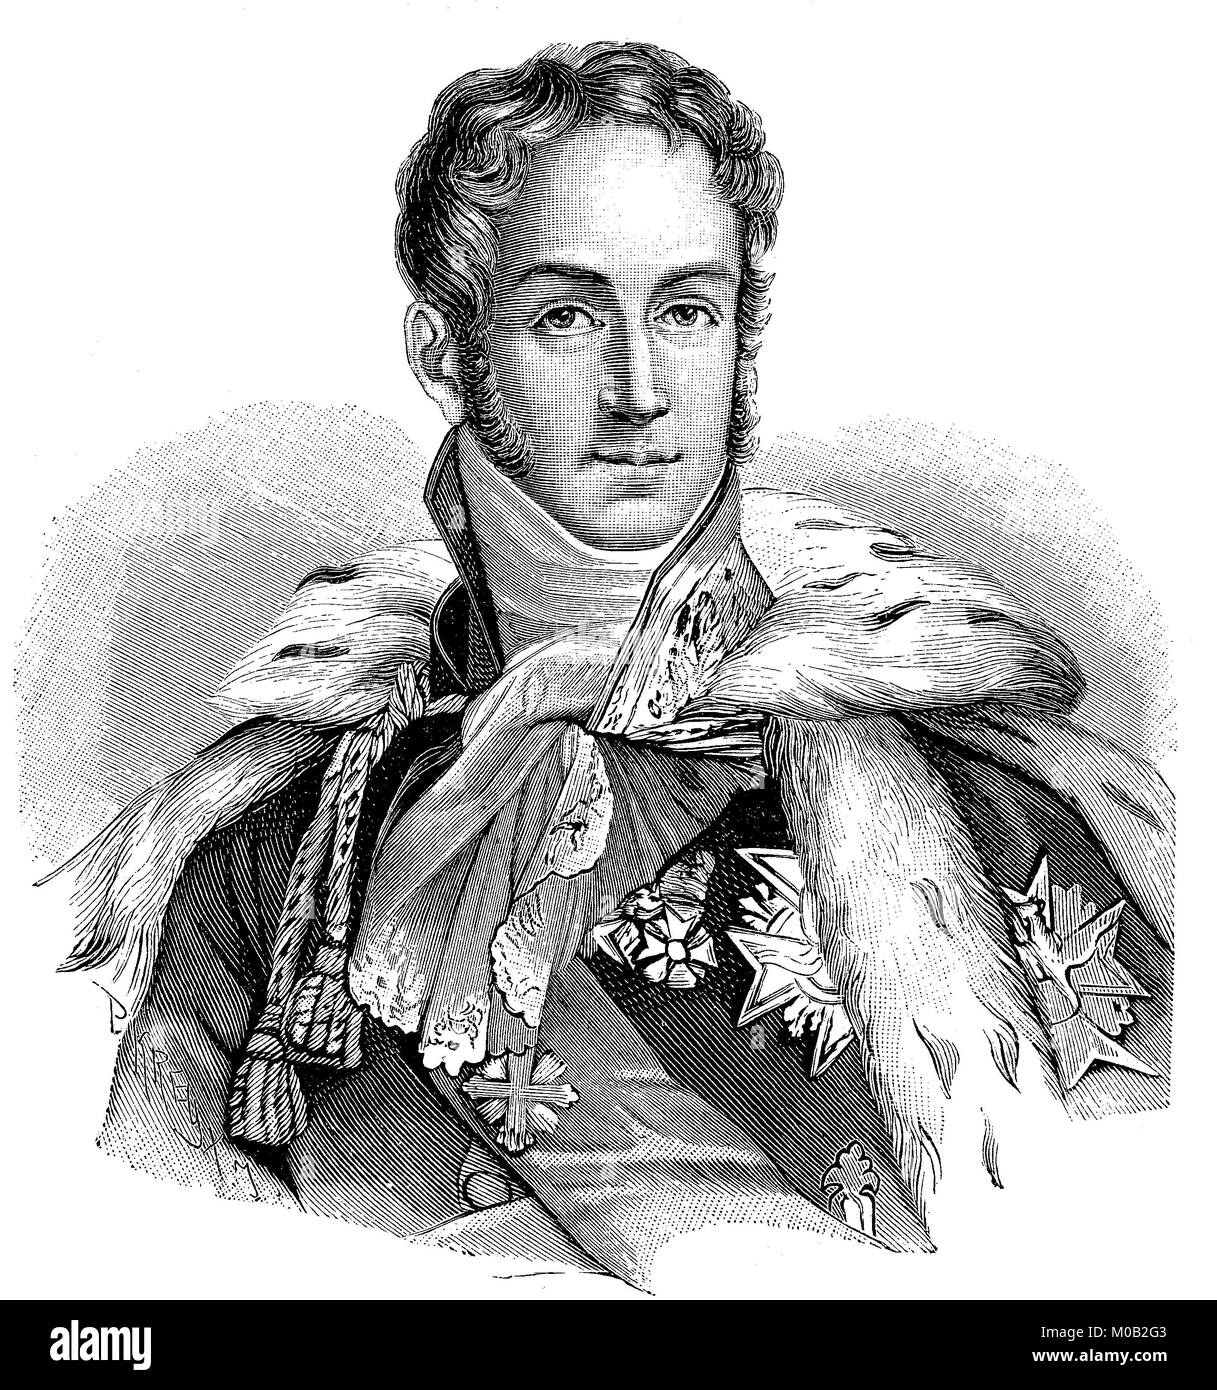 Le Prince Jules Auguste Armand Marie, comte de Polignac, 14 mai 1780 - 2 mars 1847, puis brièvement 3e duc de Polignac en 1847, était un homme d'État français, l'amélioration numérique reproduction d'une estampe originale de 1880 Banque D'Images